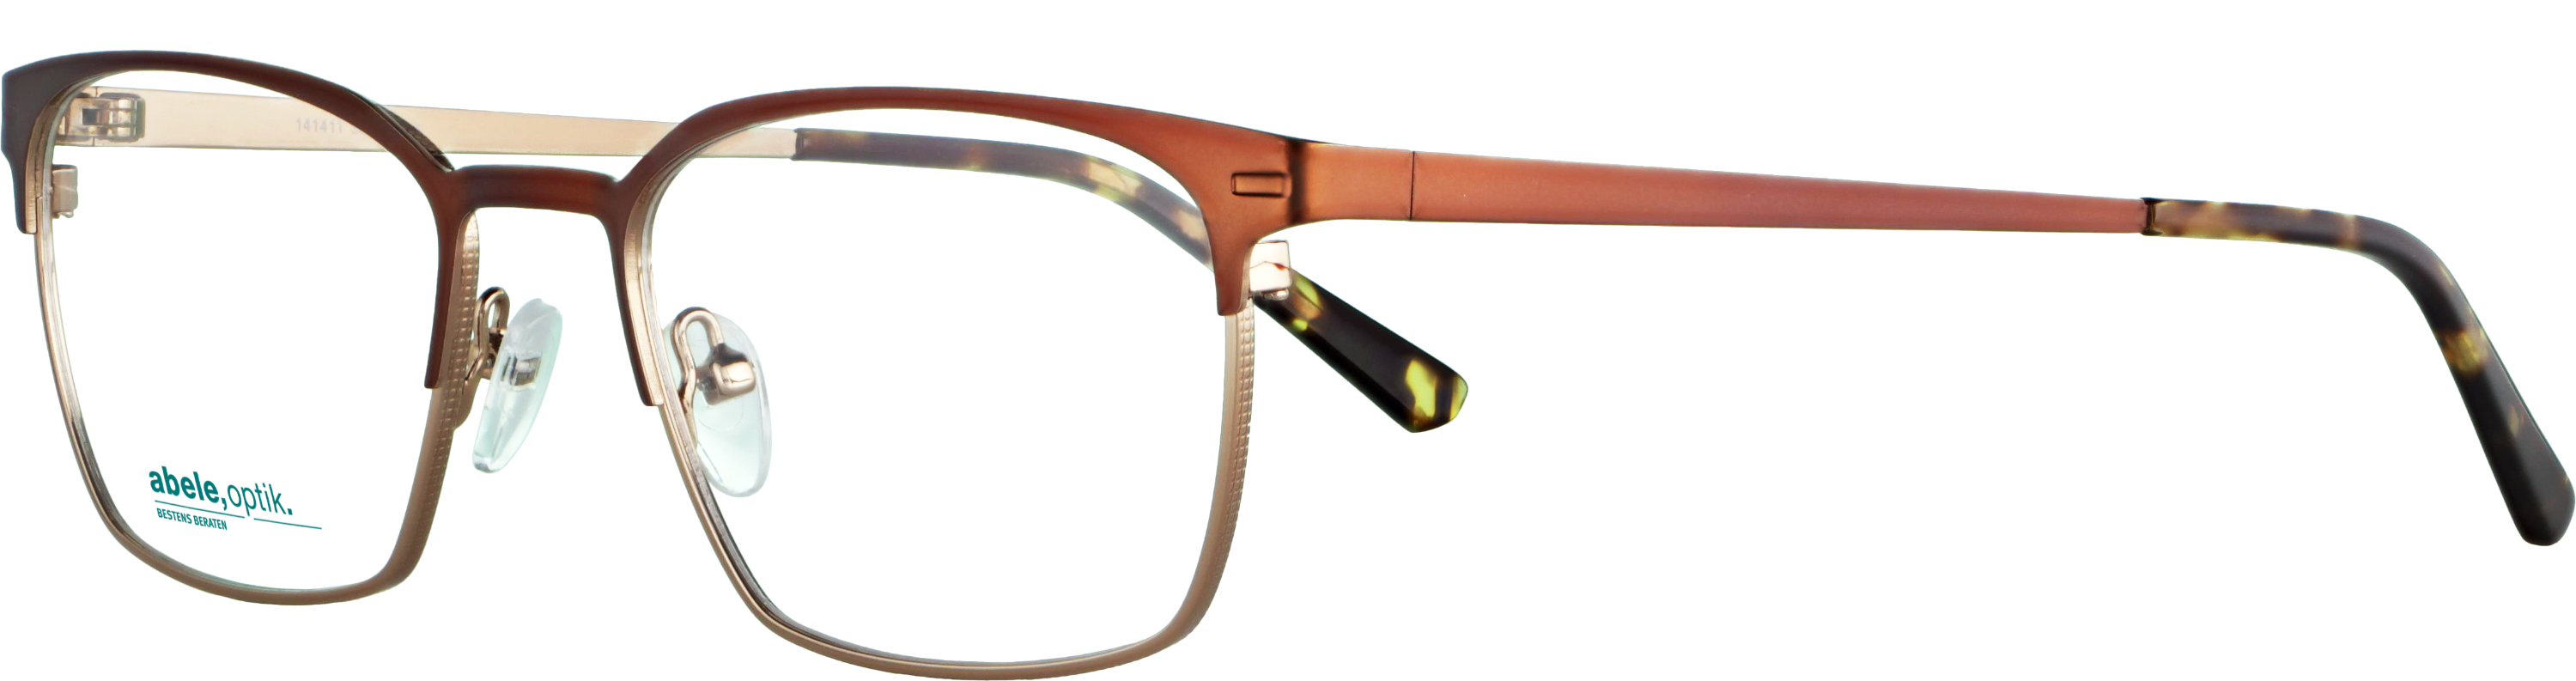 Das Bild zeigt die Korrektionsbrille 141411 von der Marke Abele Optik in braun.